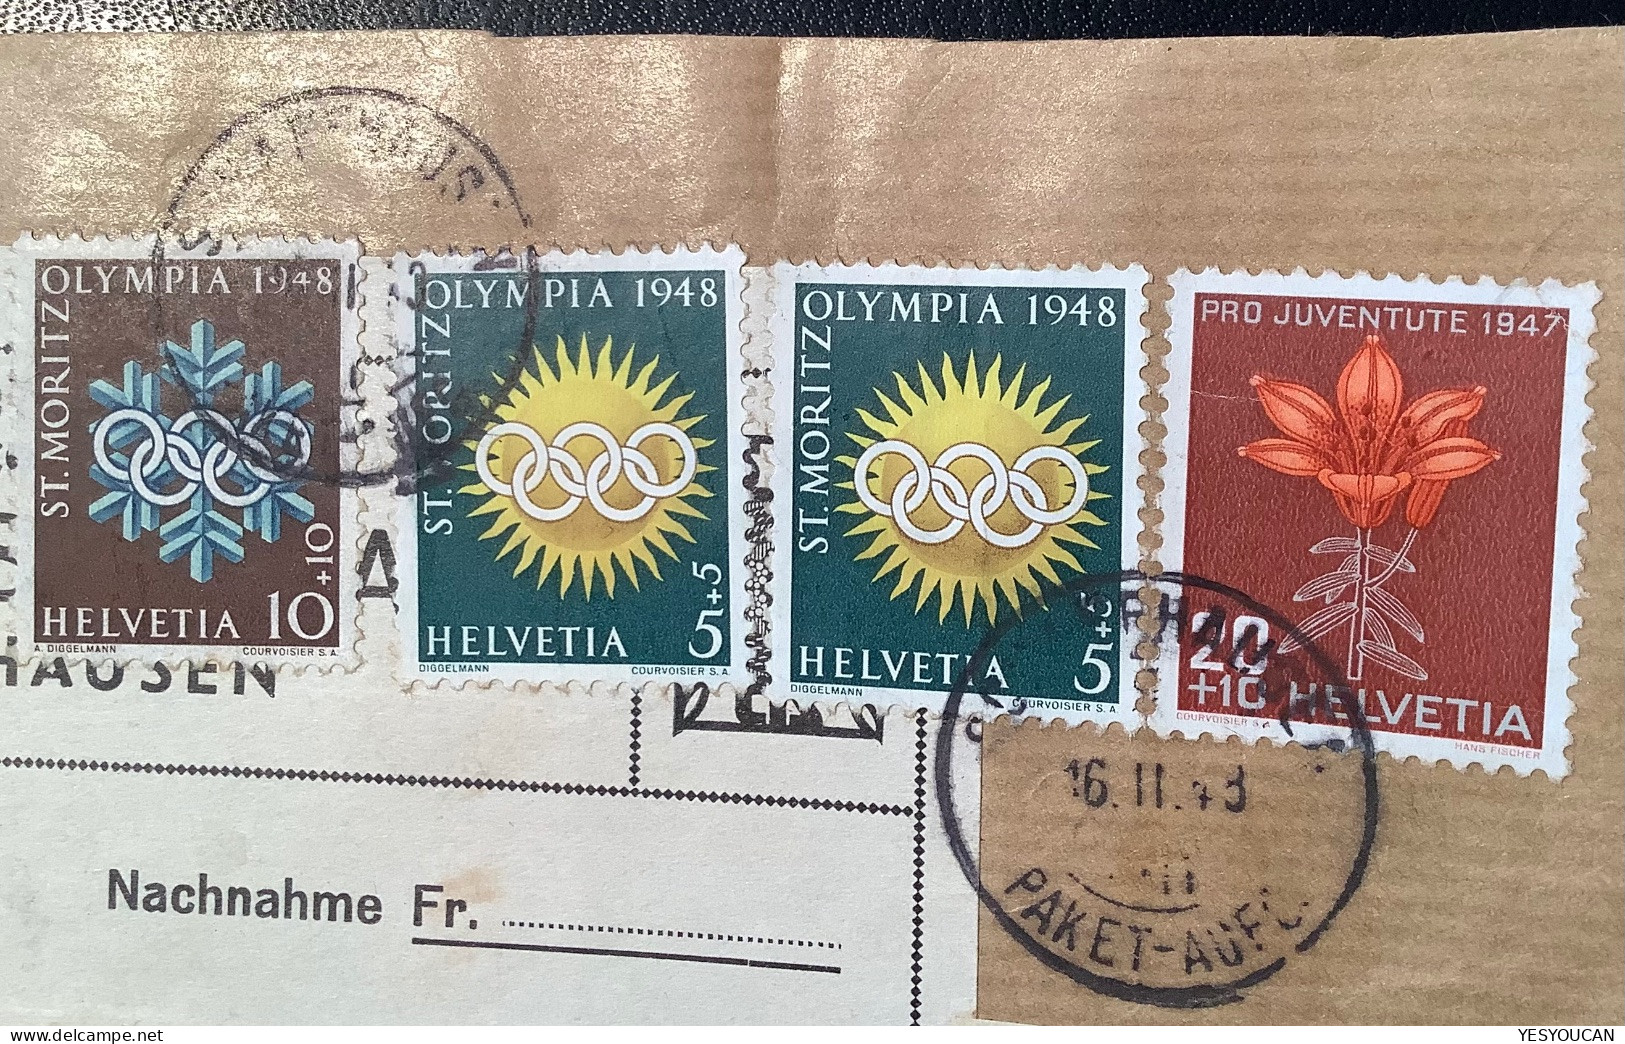 SCHAFFHAUSEN 1948 Seltene PAKET-FRANK.Pro Juventute1947+Olympia1948St Moritz (sport Flowers Schweiz Brief Olympic Games - Lettres & Documents